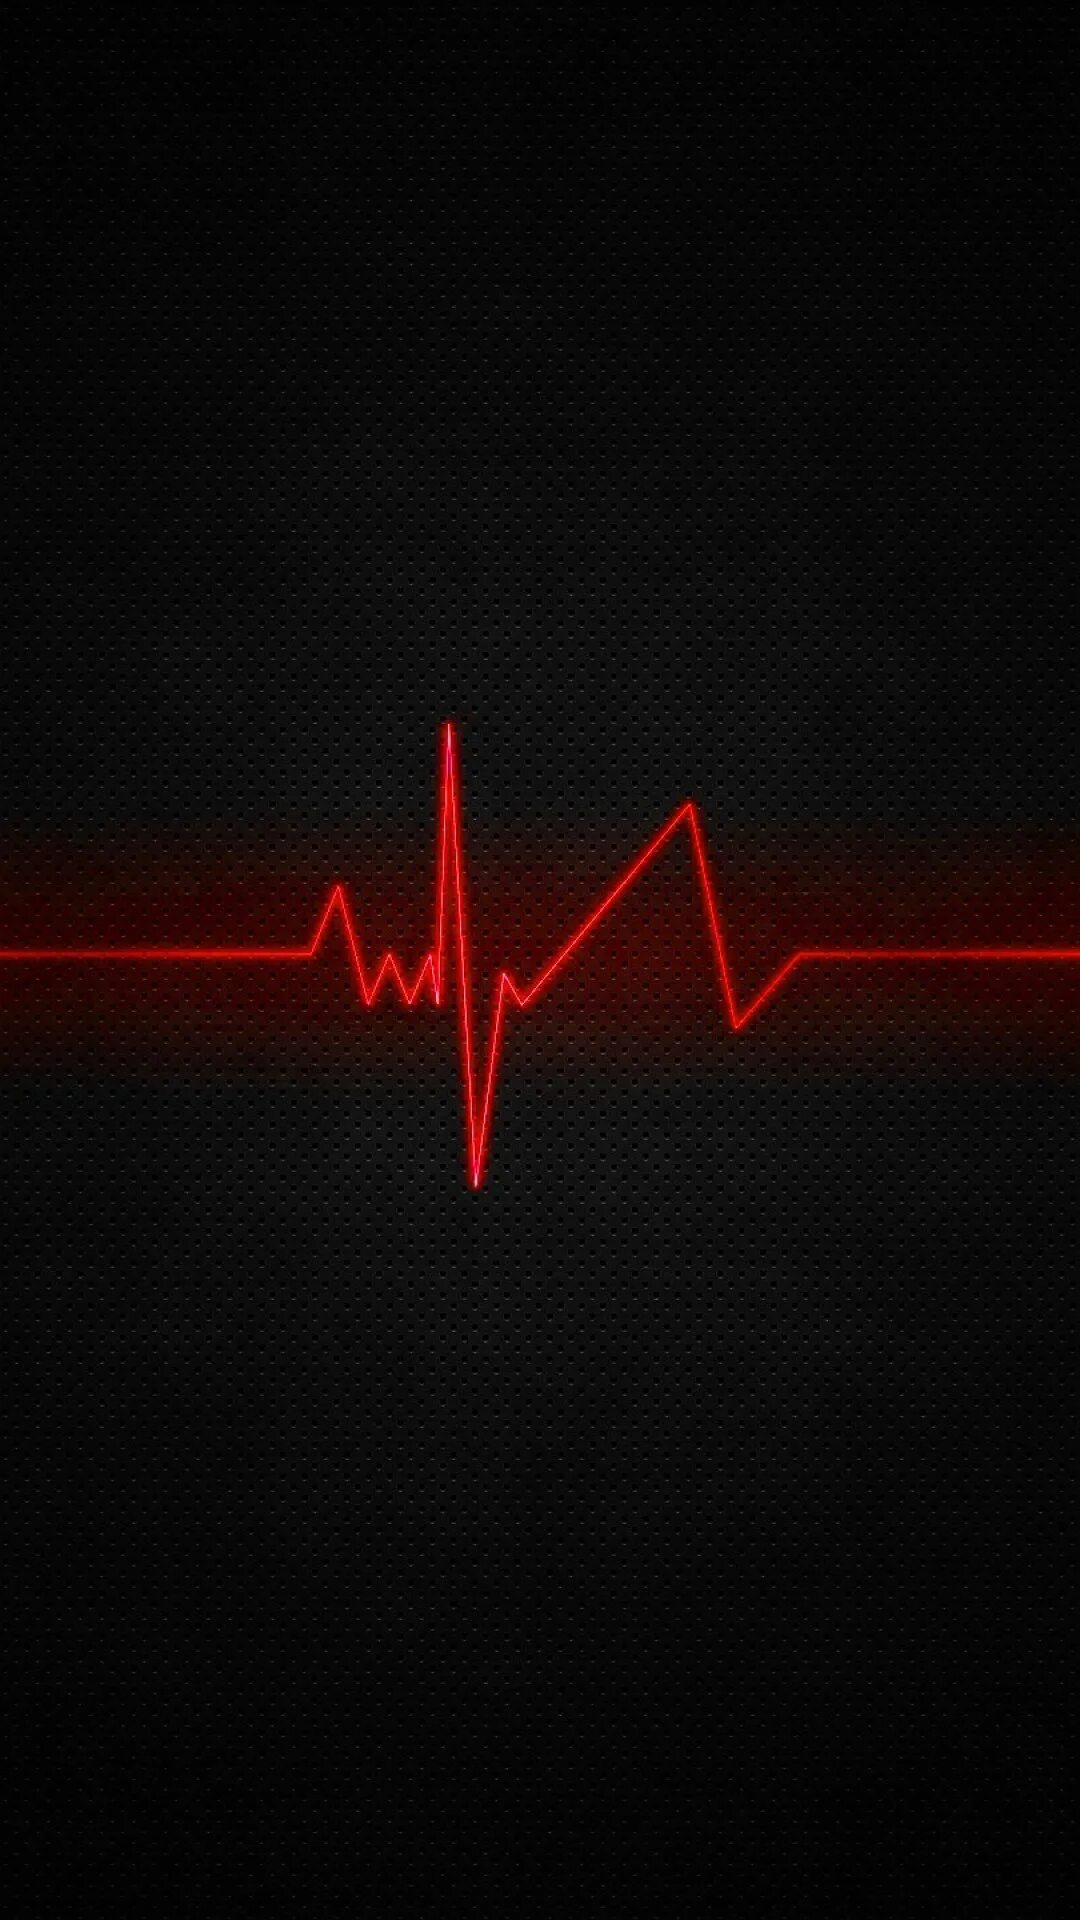 Эффект сердцебиения. Пульс. Ритм сердца на черном фоне. Обои на телефон пульс. Кардиограмма сердца.